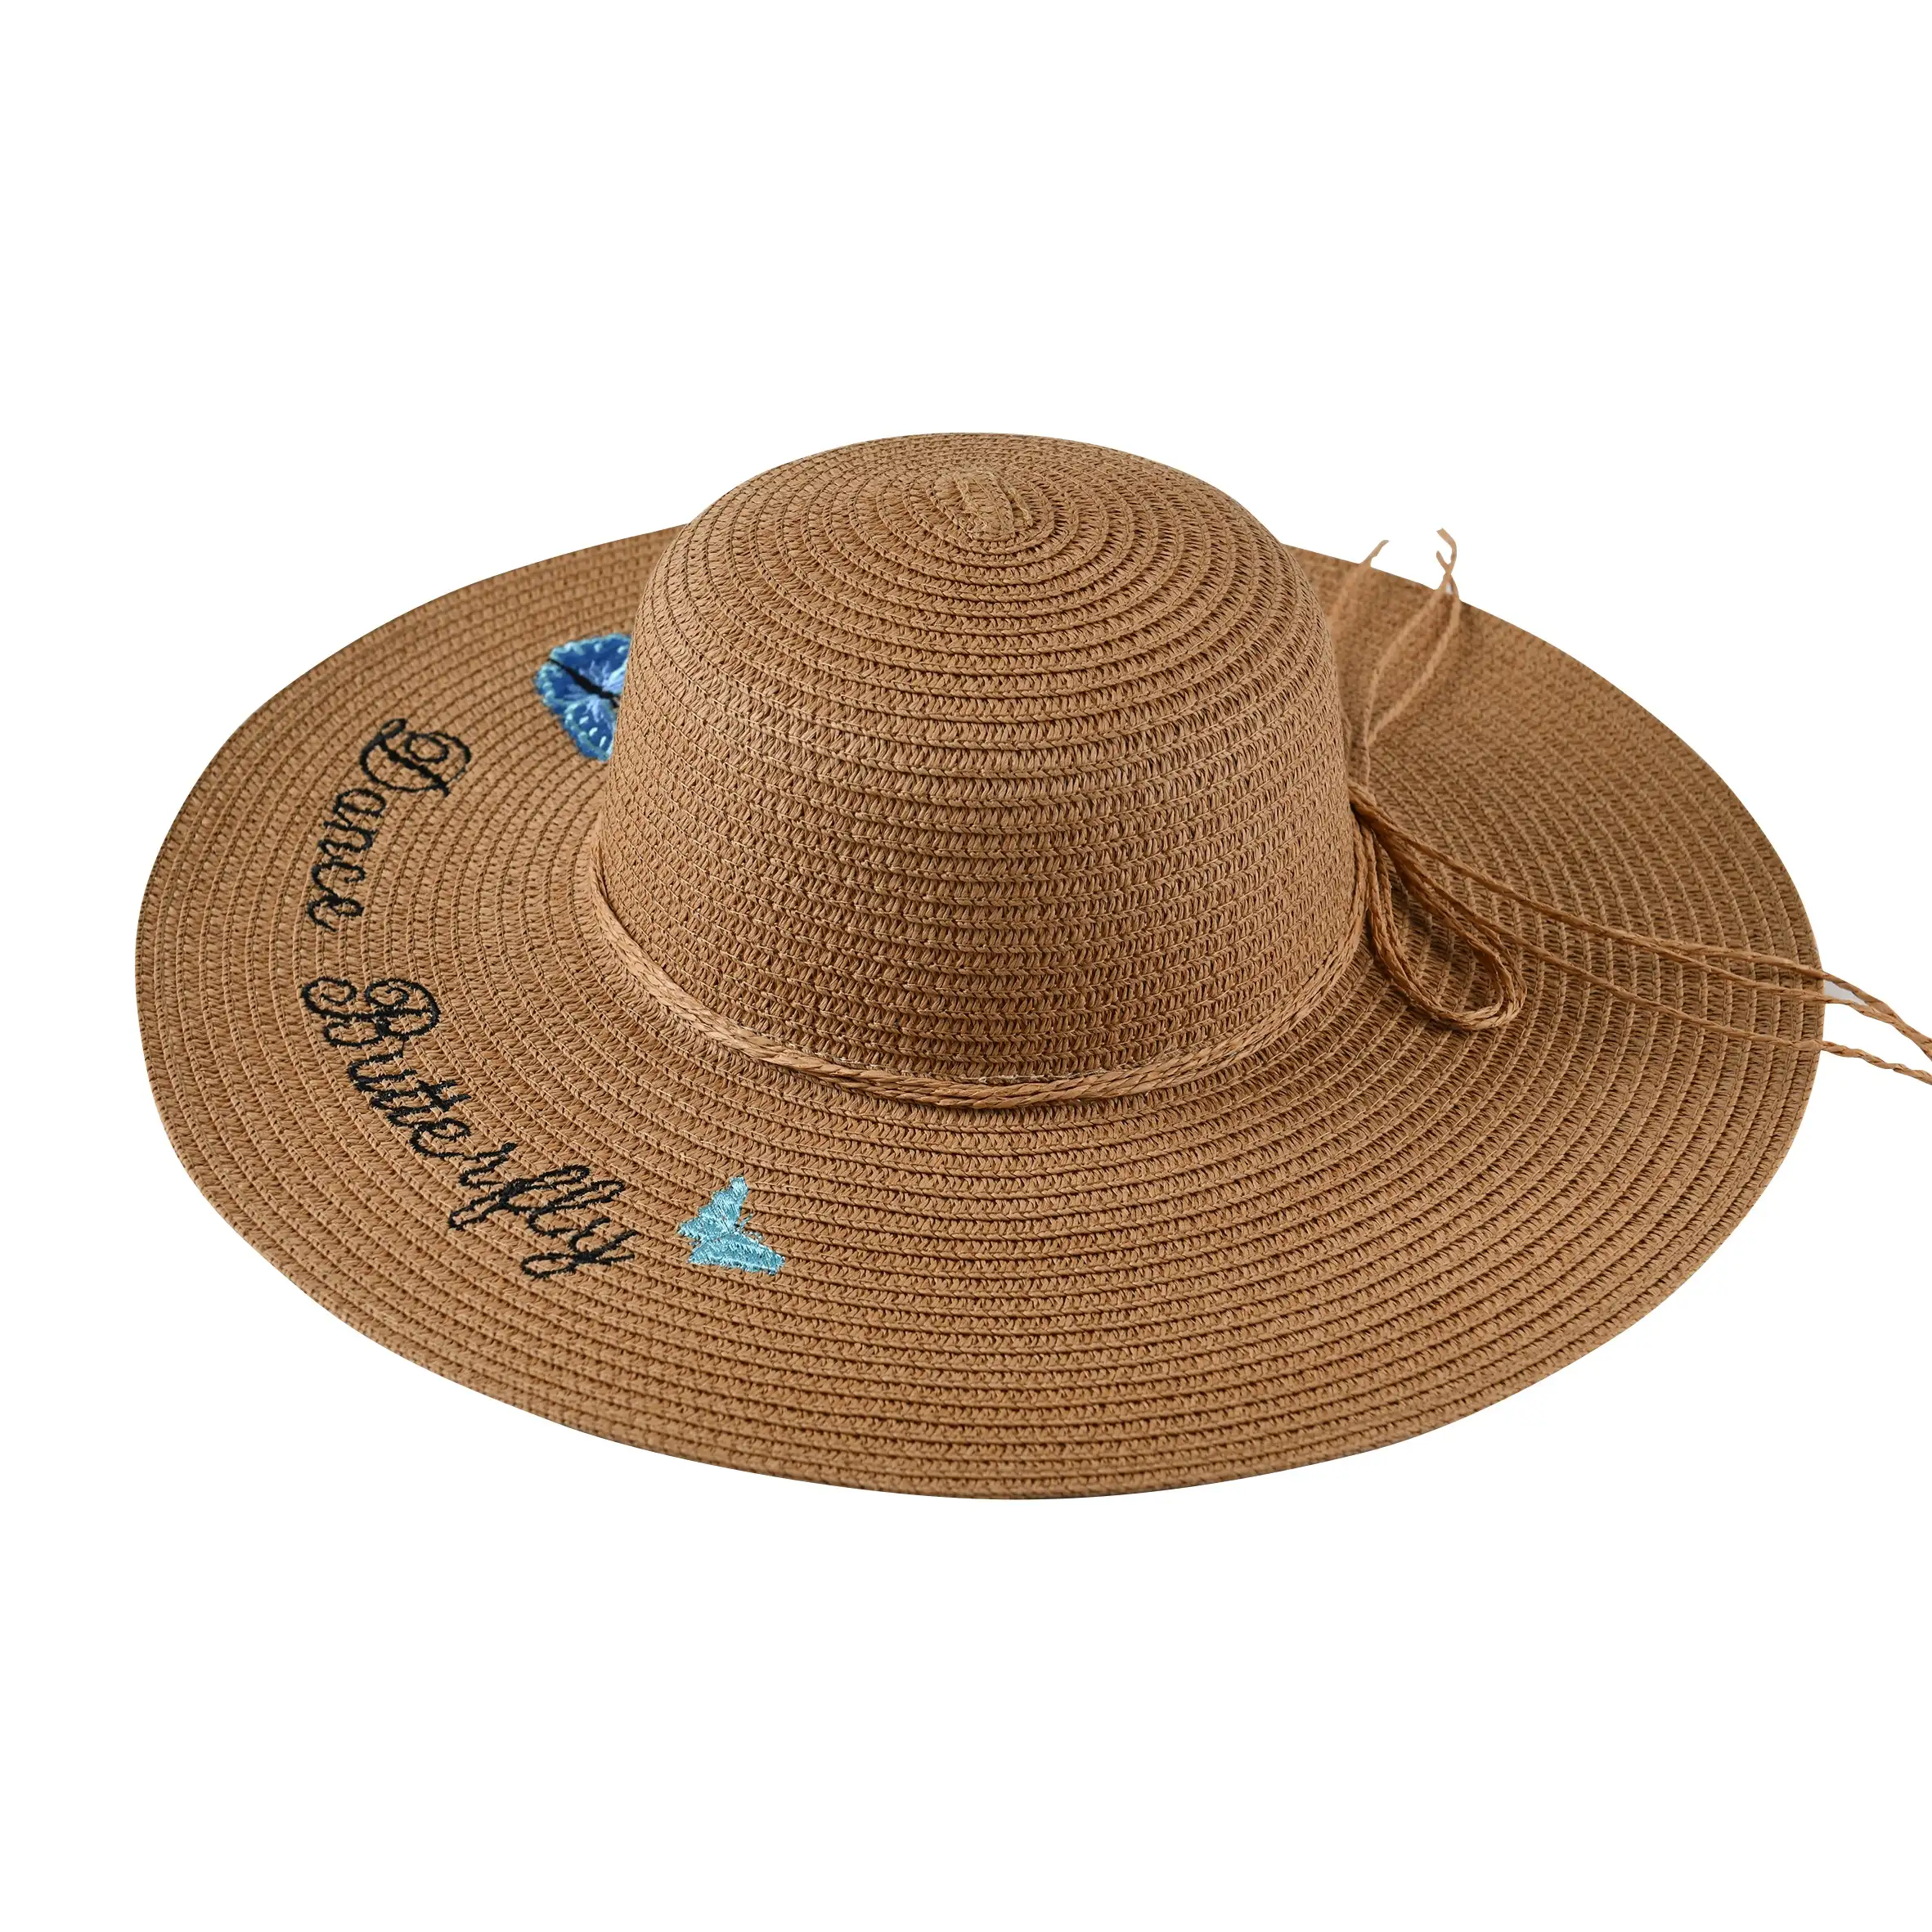 Hediyelik eşya kadın Chapeau bayanlar güneş şapkası yaz katlanabilir hasır şapka geniş Brim plaj şapkası